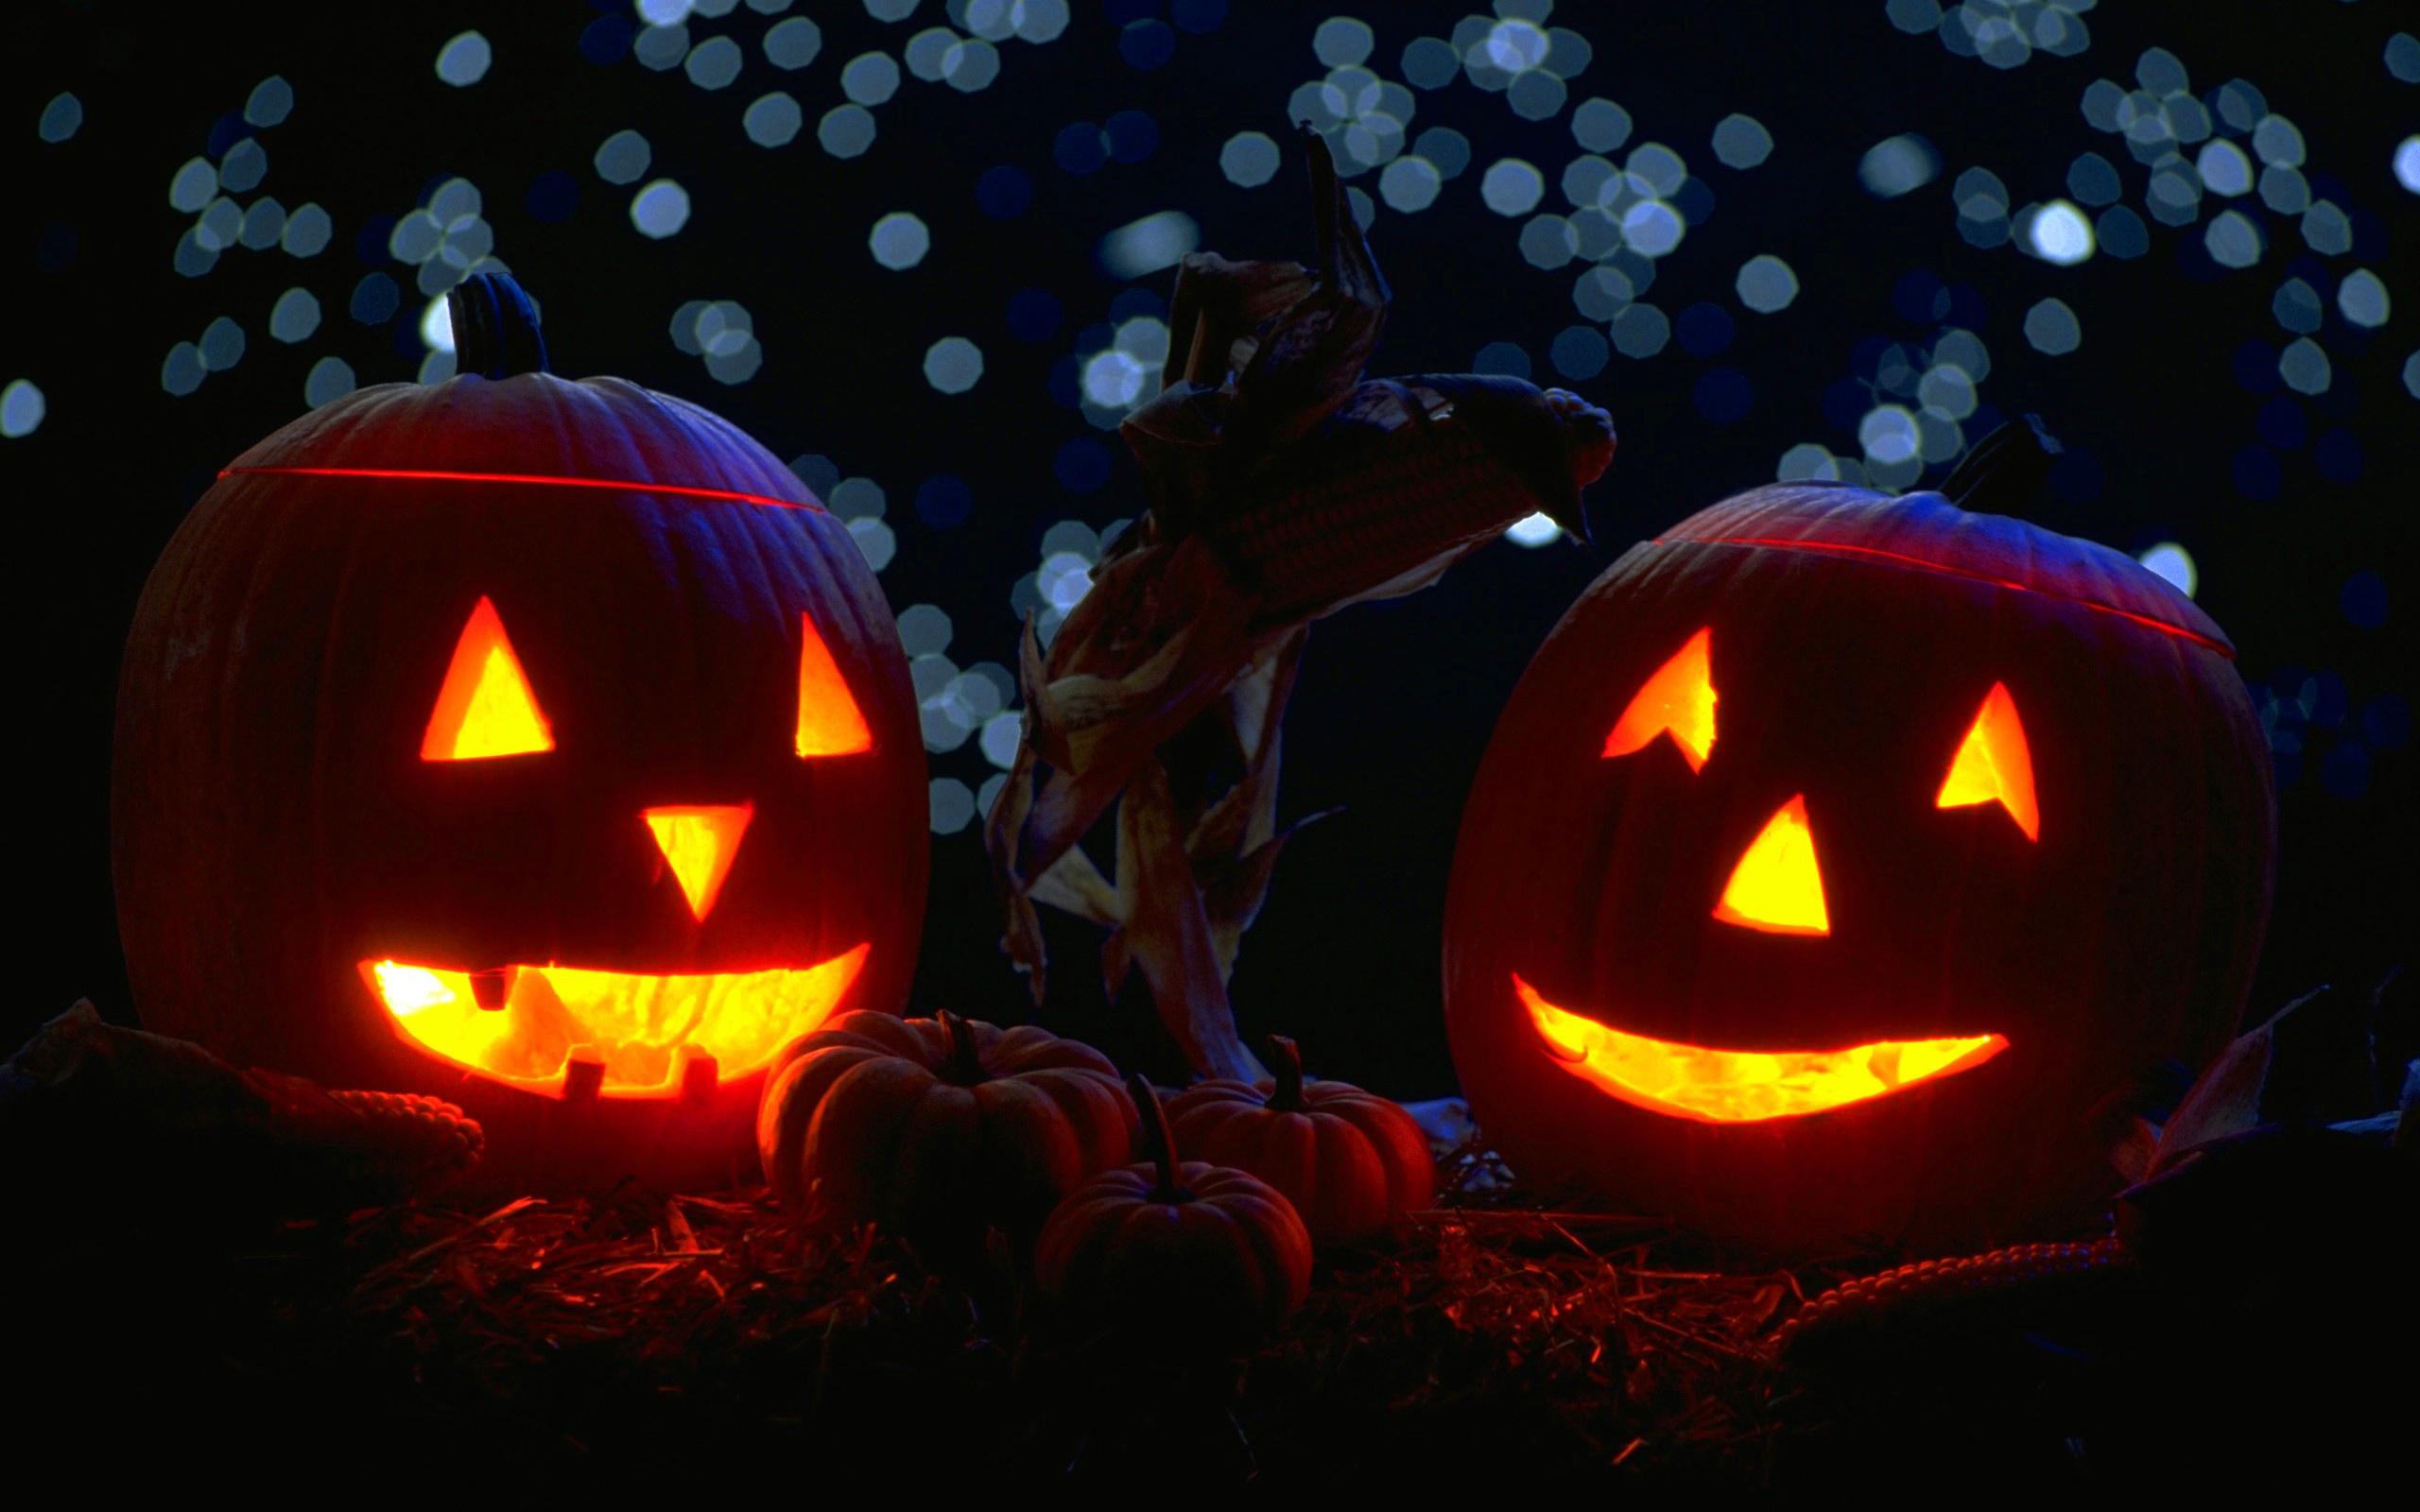 Download A Spooky Pumpkin for a Frightening Halloween Wallpaper   Wallpaperscom